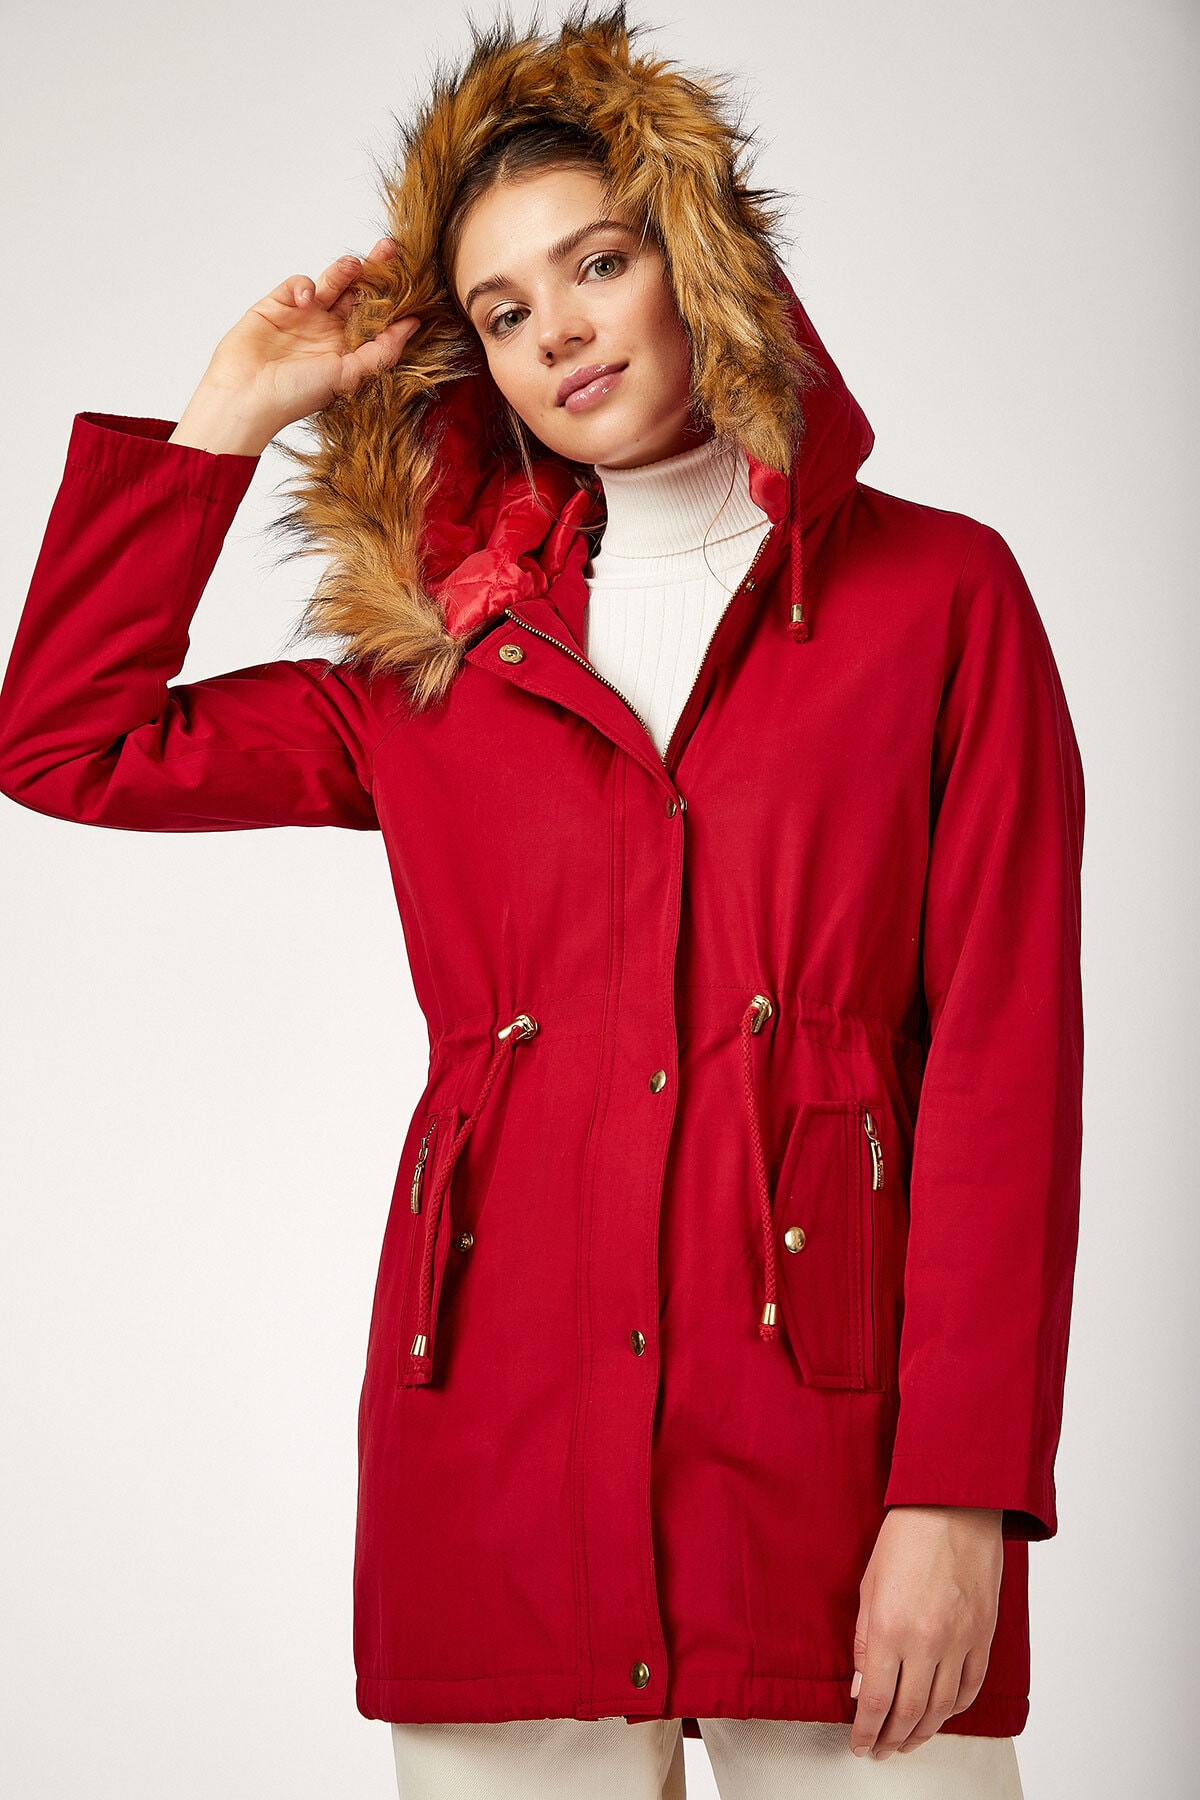 Bigdart 9064 Hooded Fur Coat - Red